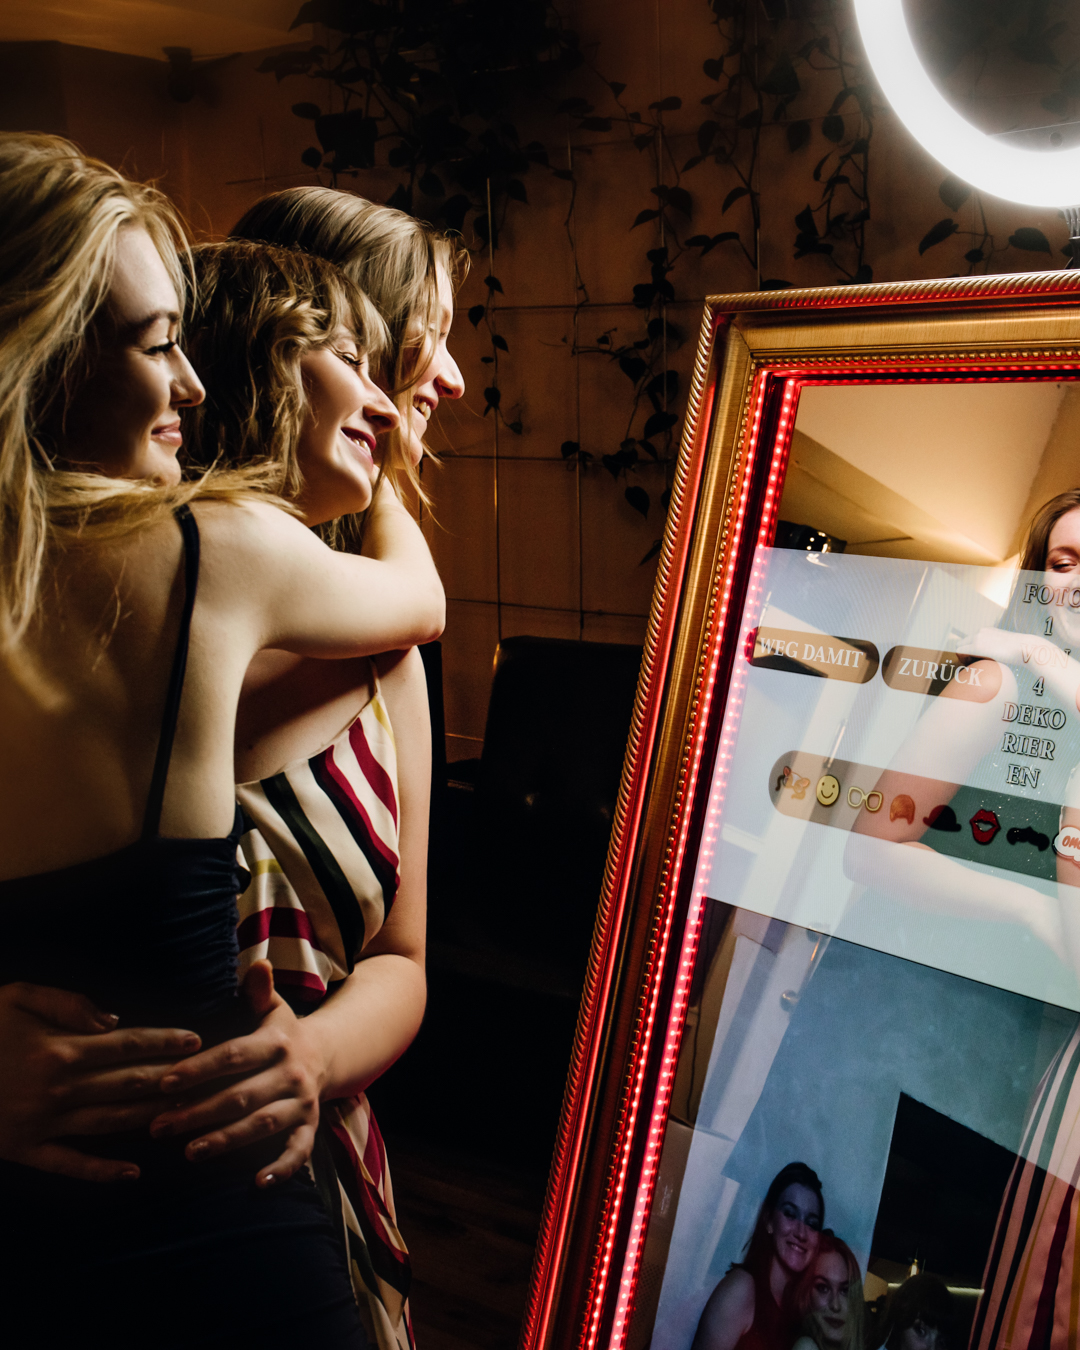 Drei fröhliche Frauen genießen Momente vor dem leuchtenden Fotospiegel (Fotobox), lachend und interagierend, in einem elegant dekorierten Raum.